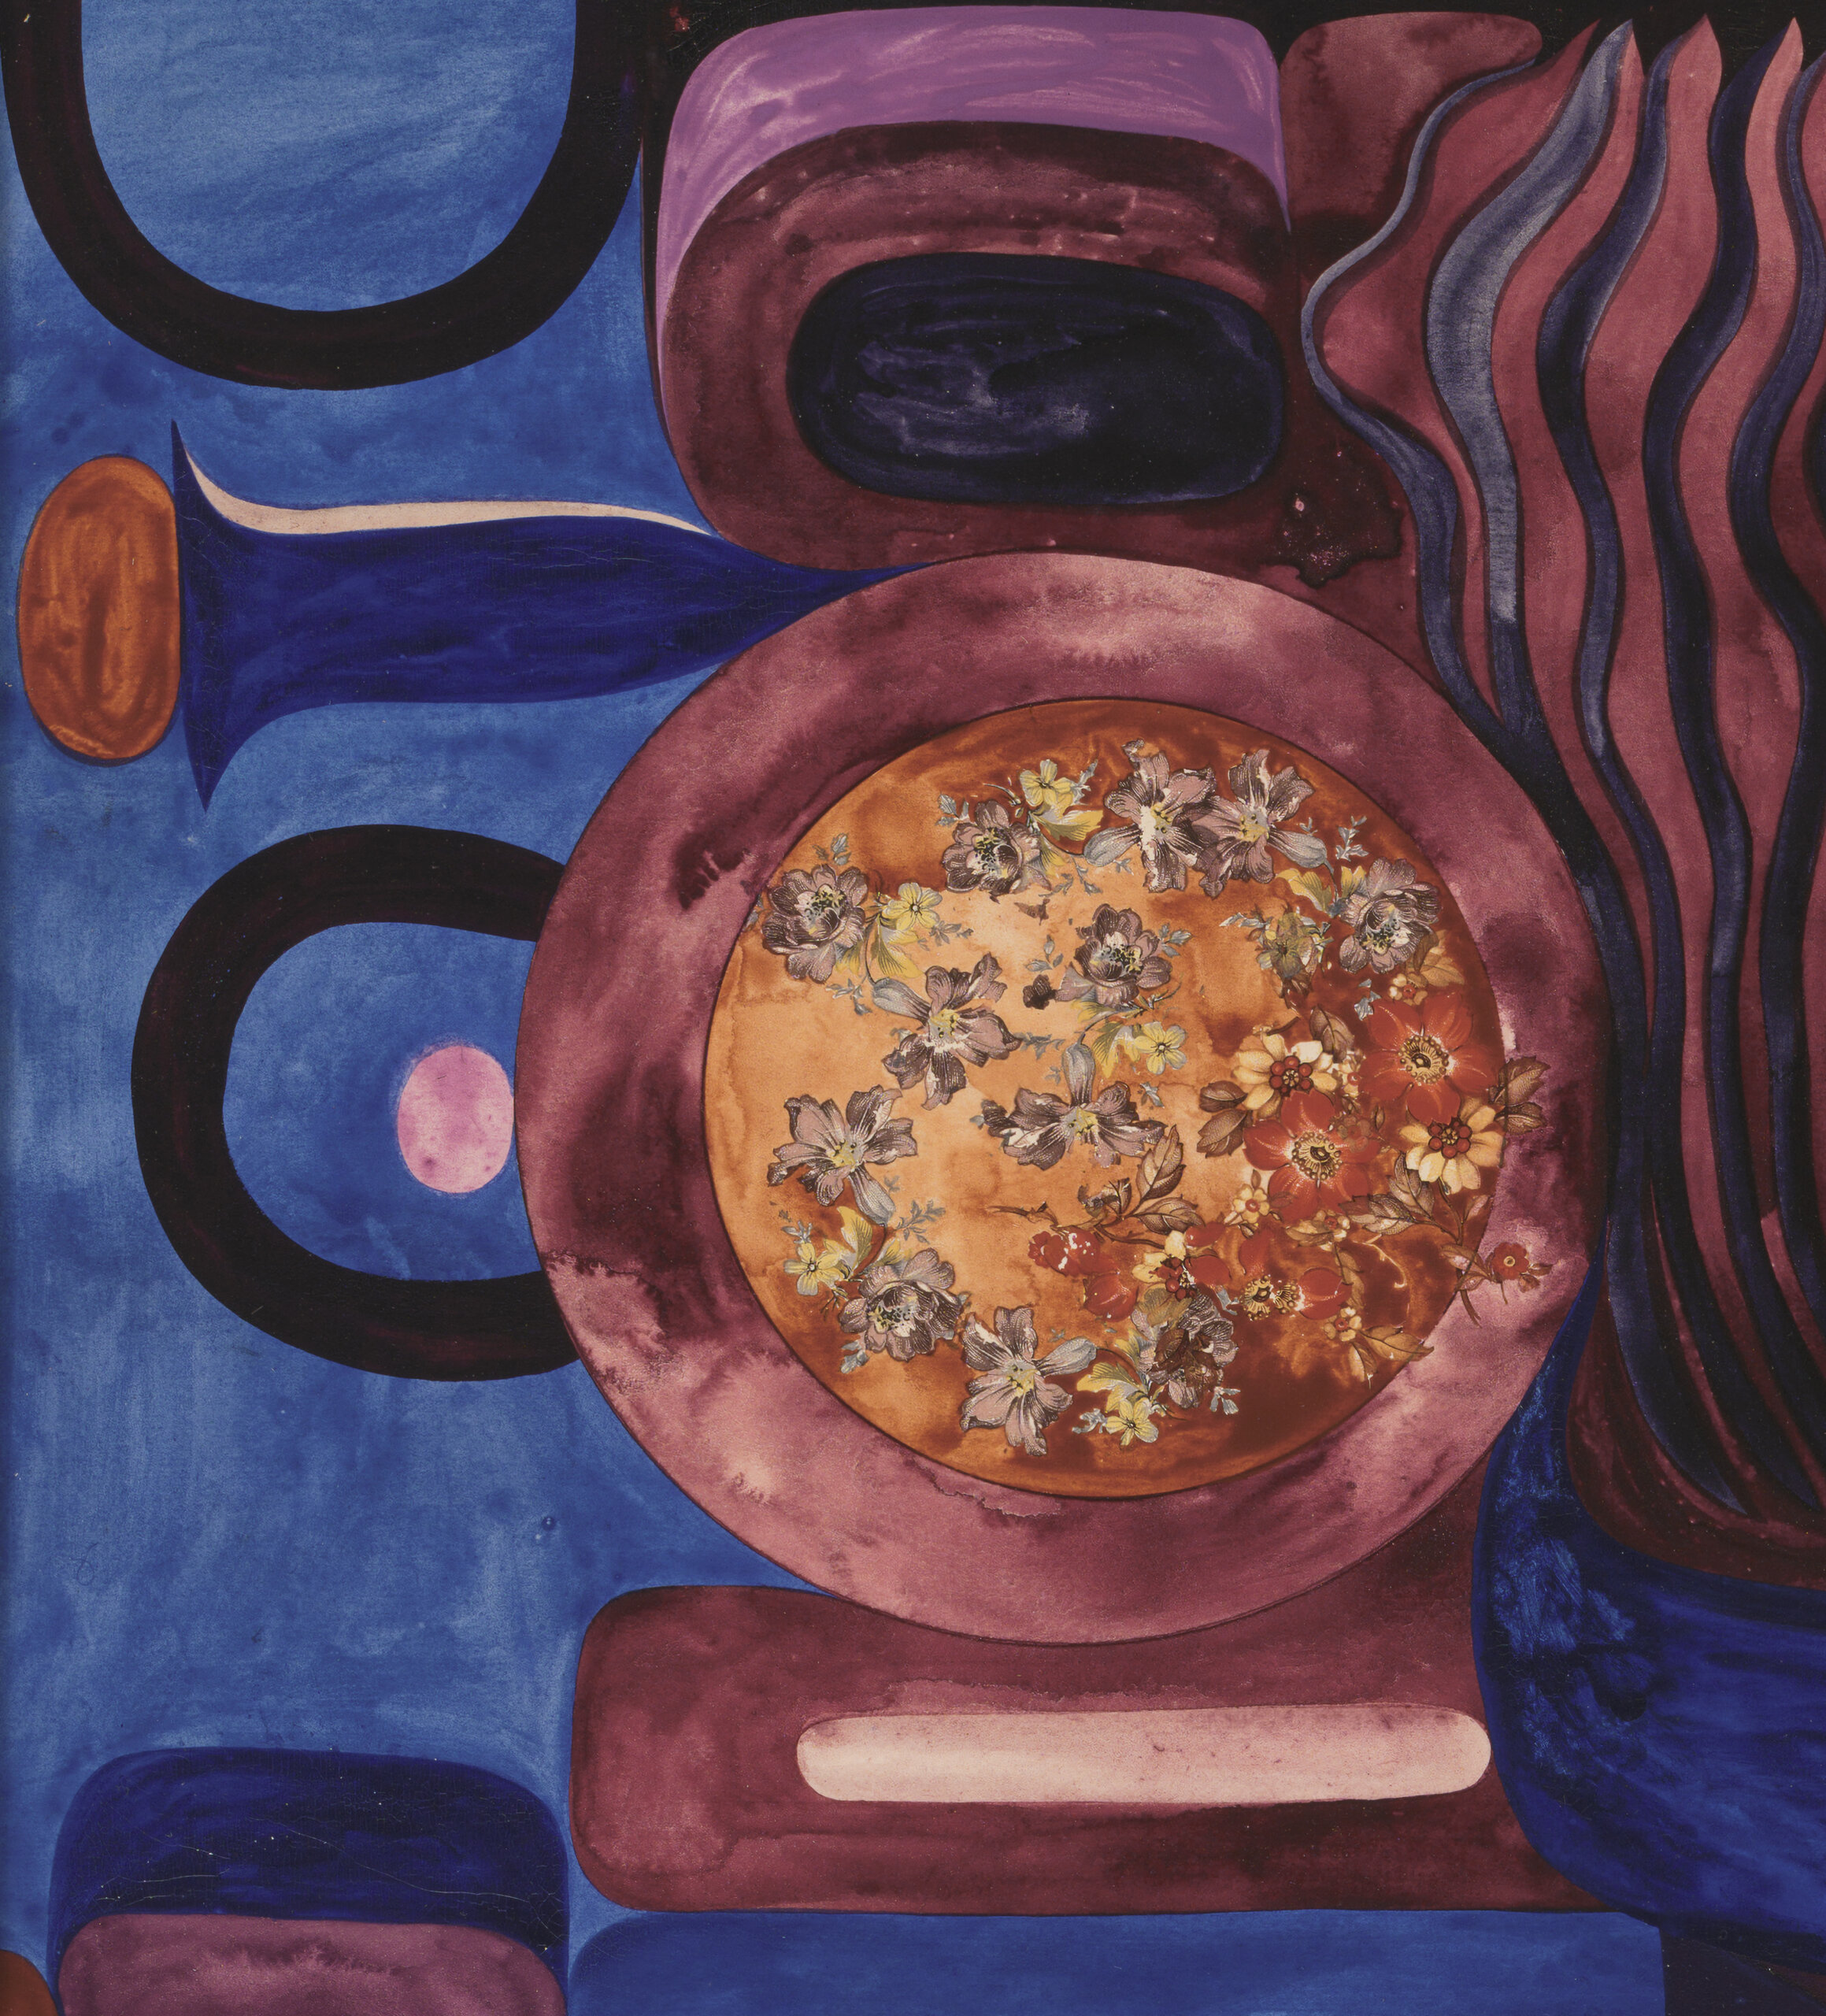 Malle Leis “Prisma”, 1967. 60 x 60 cm.